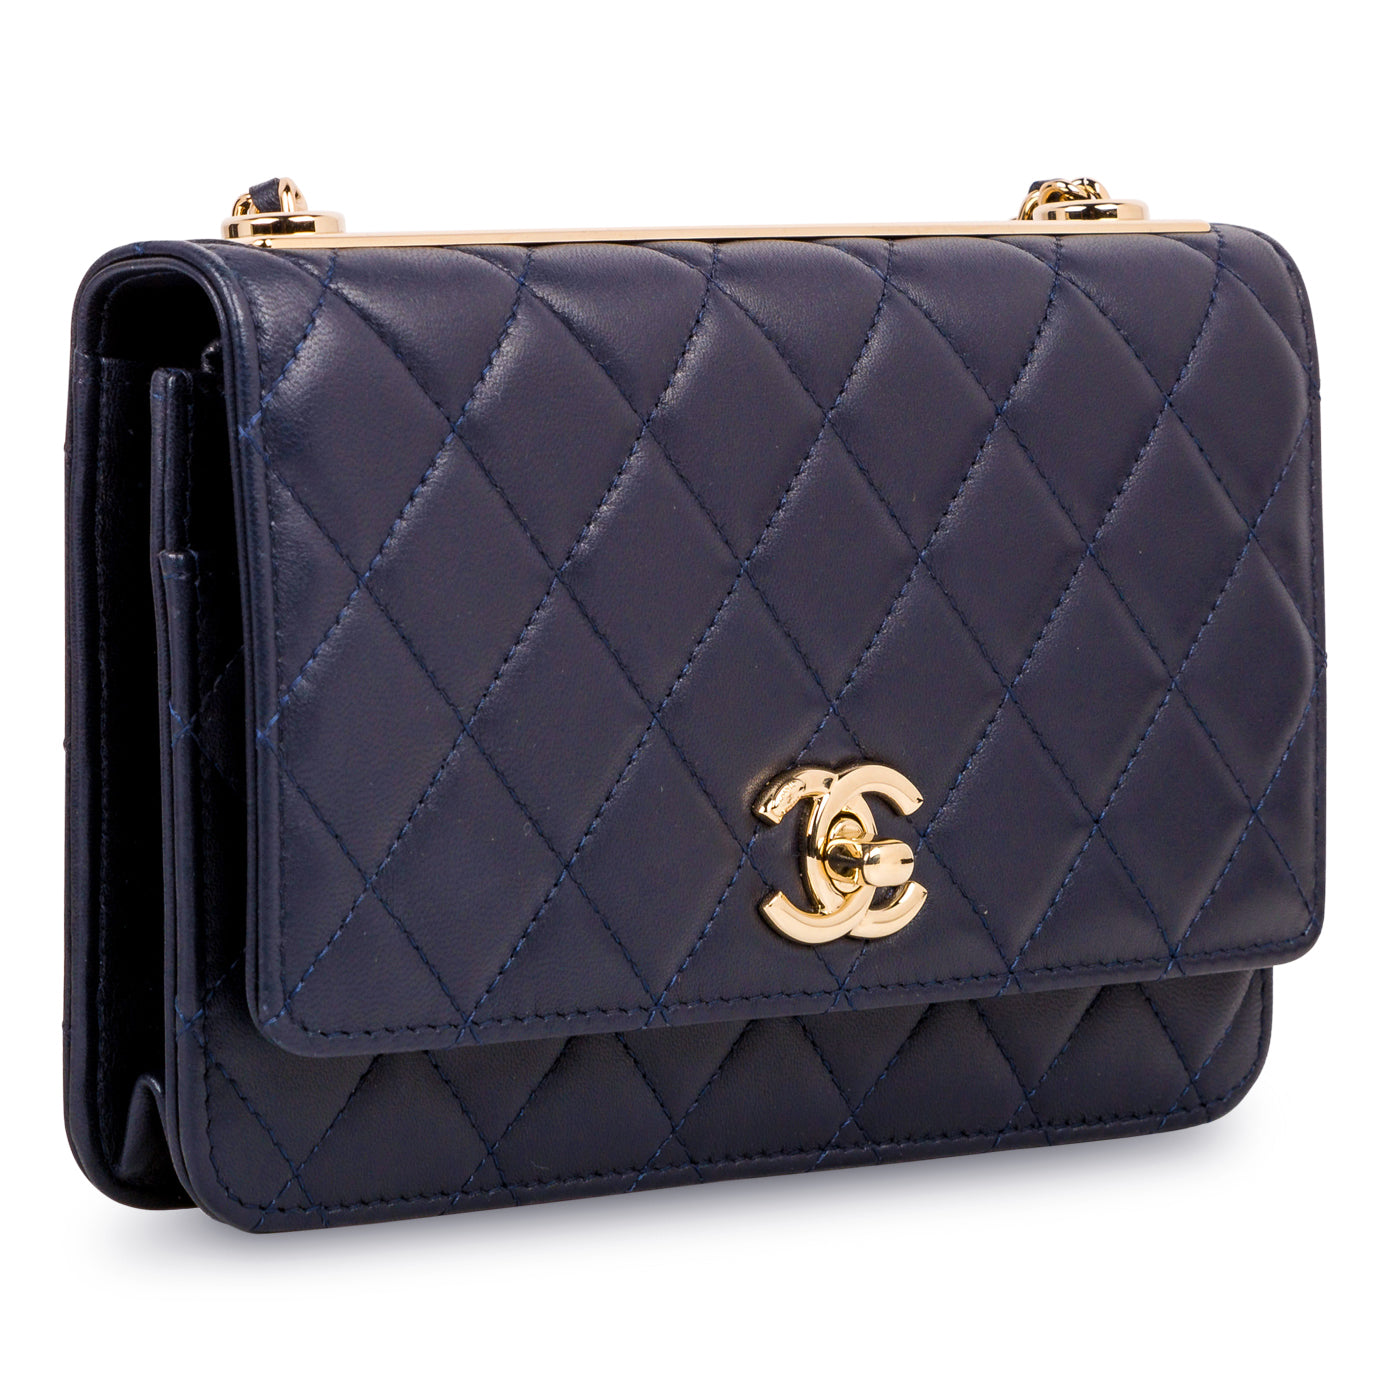 Chanel - Navy Blue Wallet On Chain - Trendy - Lambskin - GHW